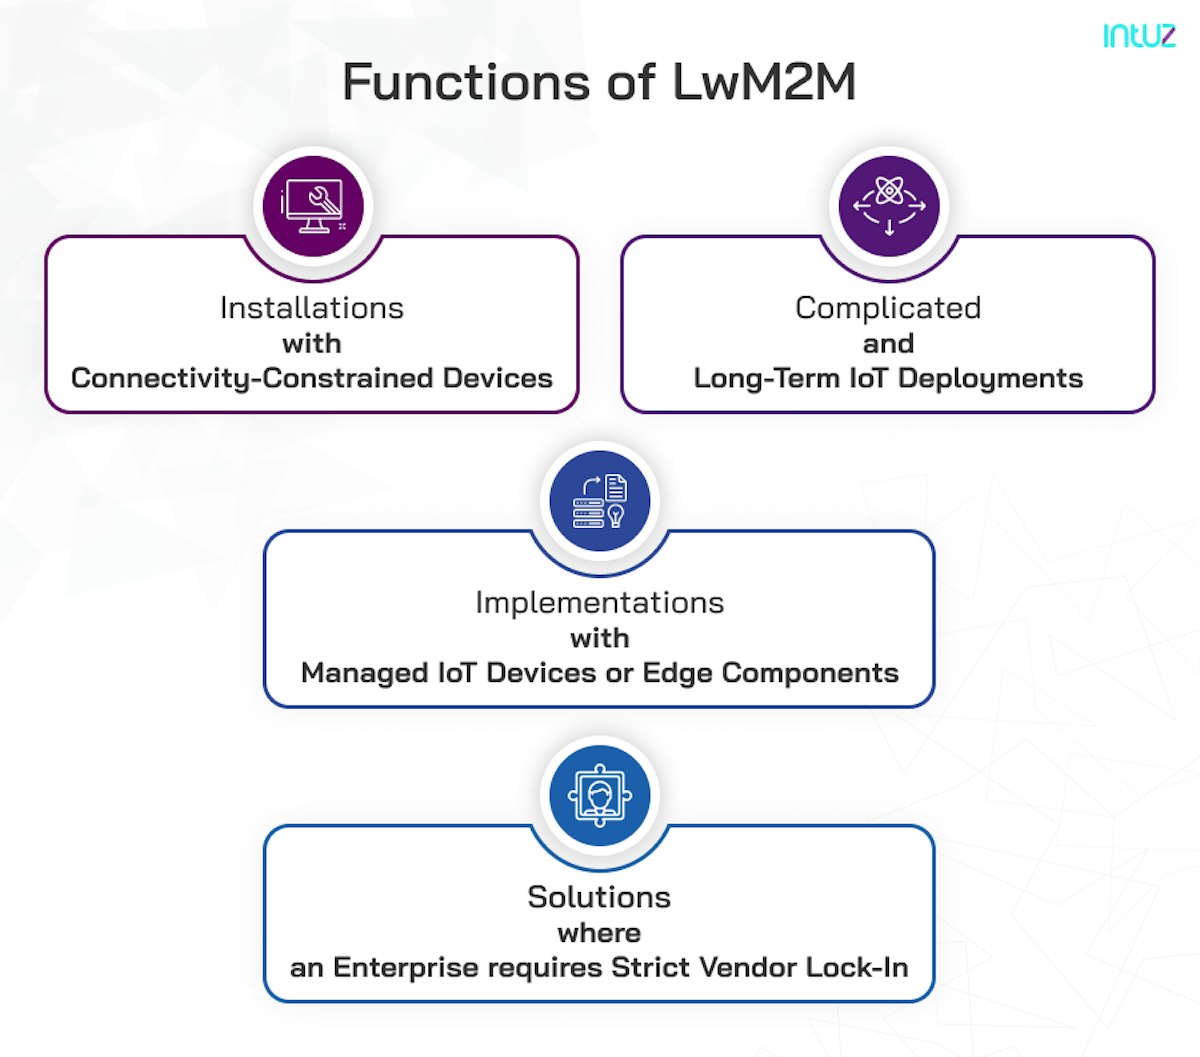 Functions of LwM2M